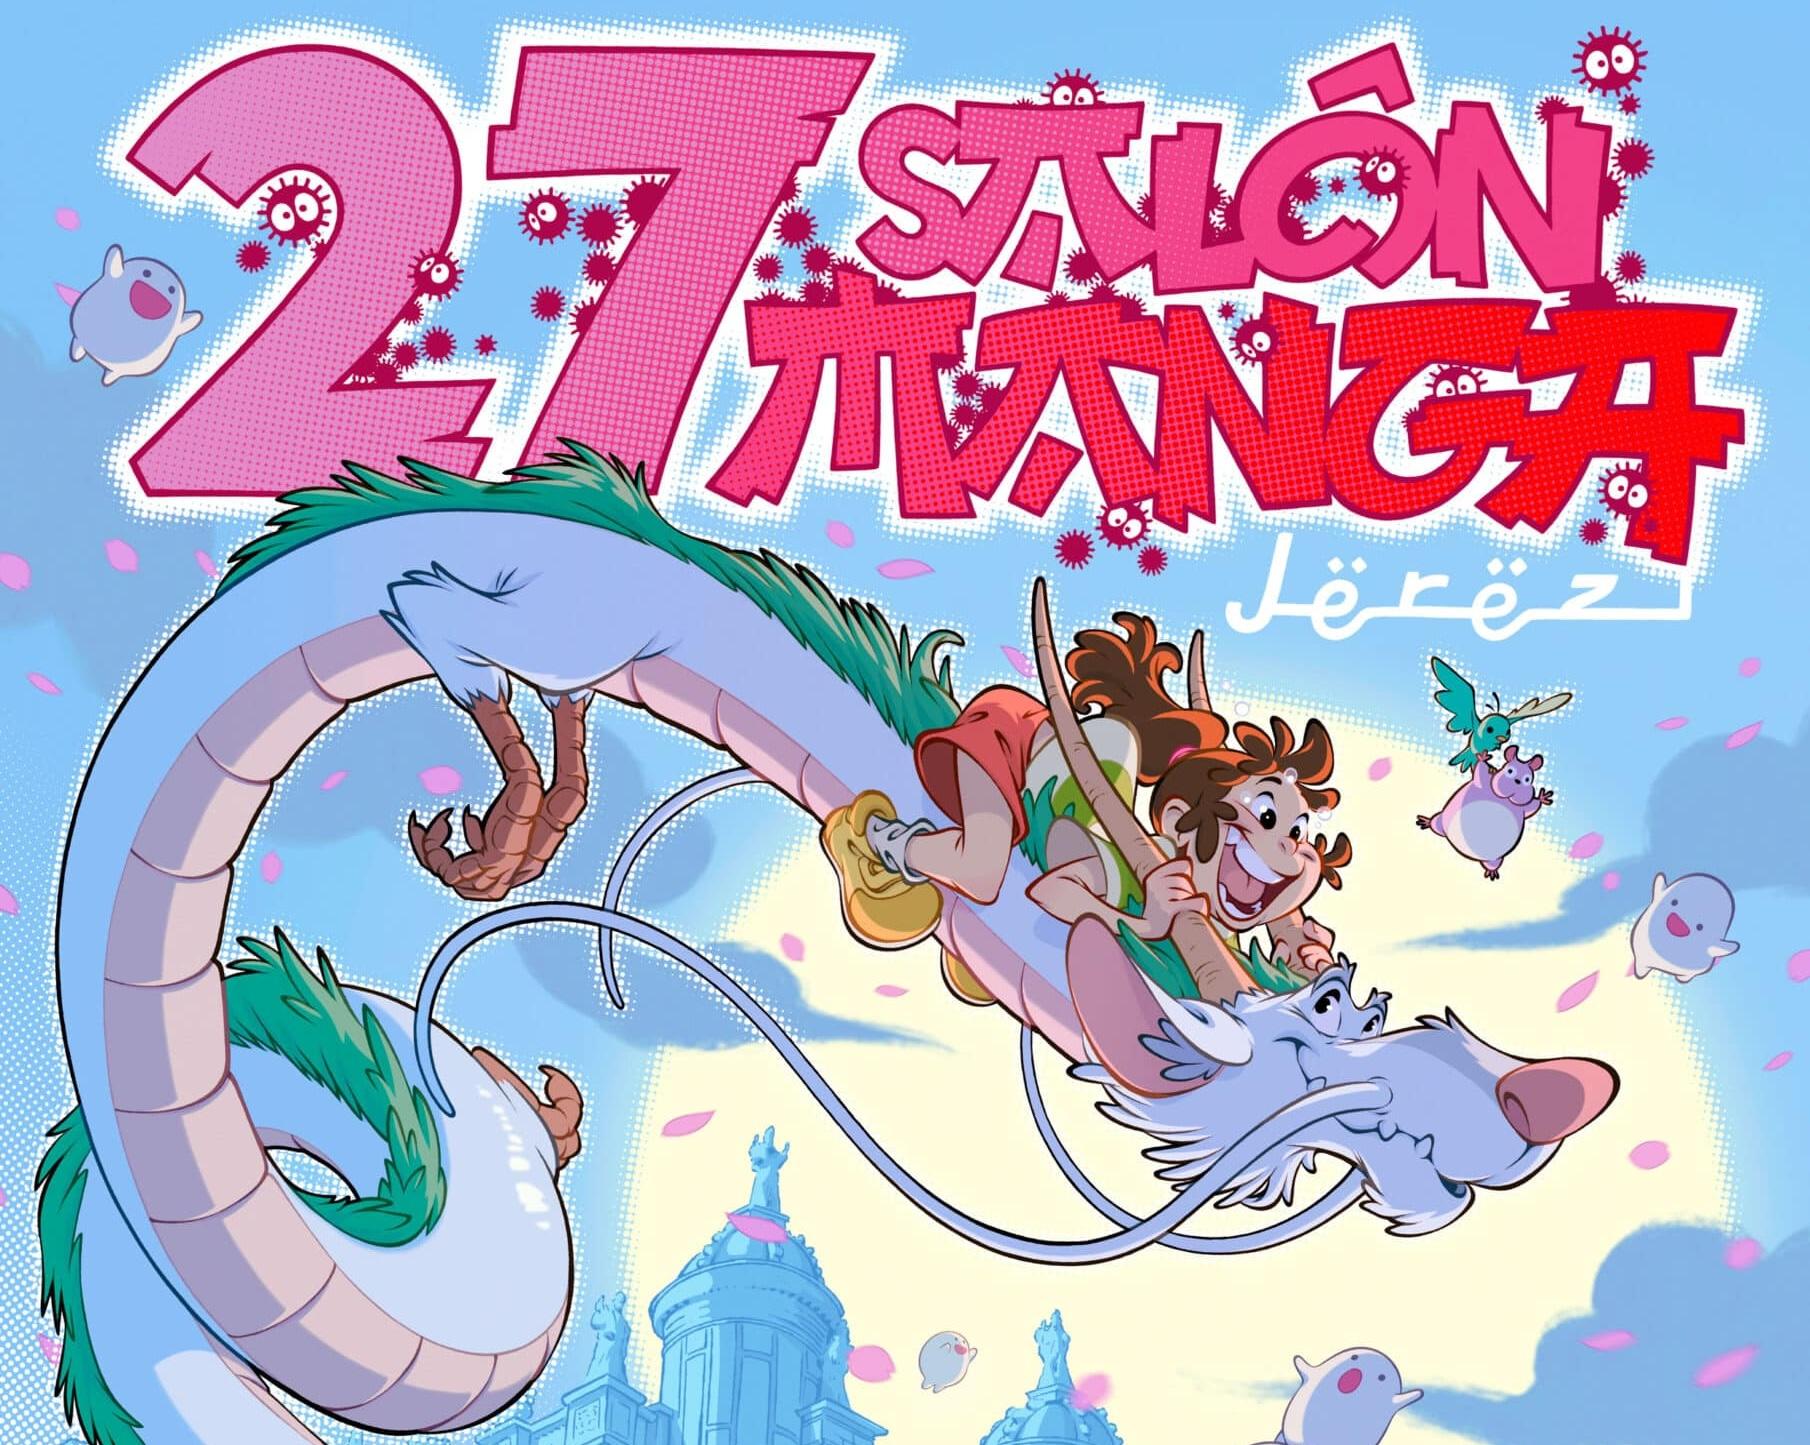 Presentado el cartel de la 27ª edición del Salón Manga de Jerez